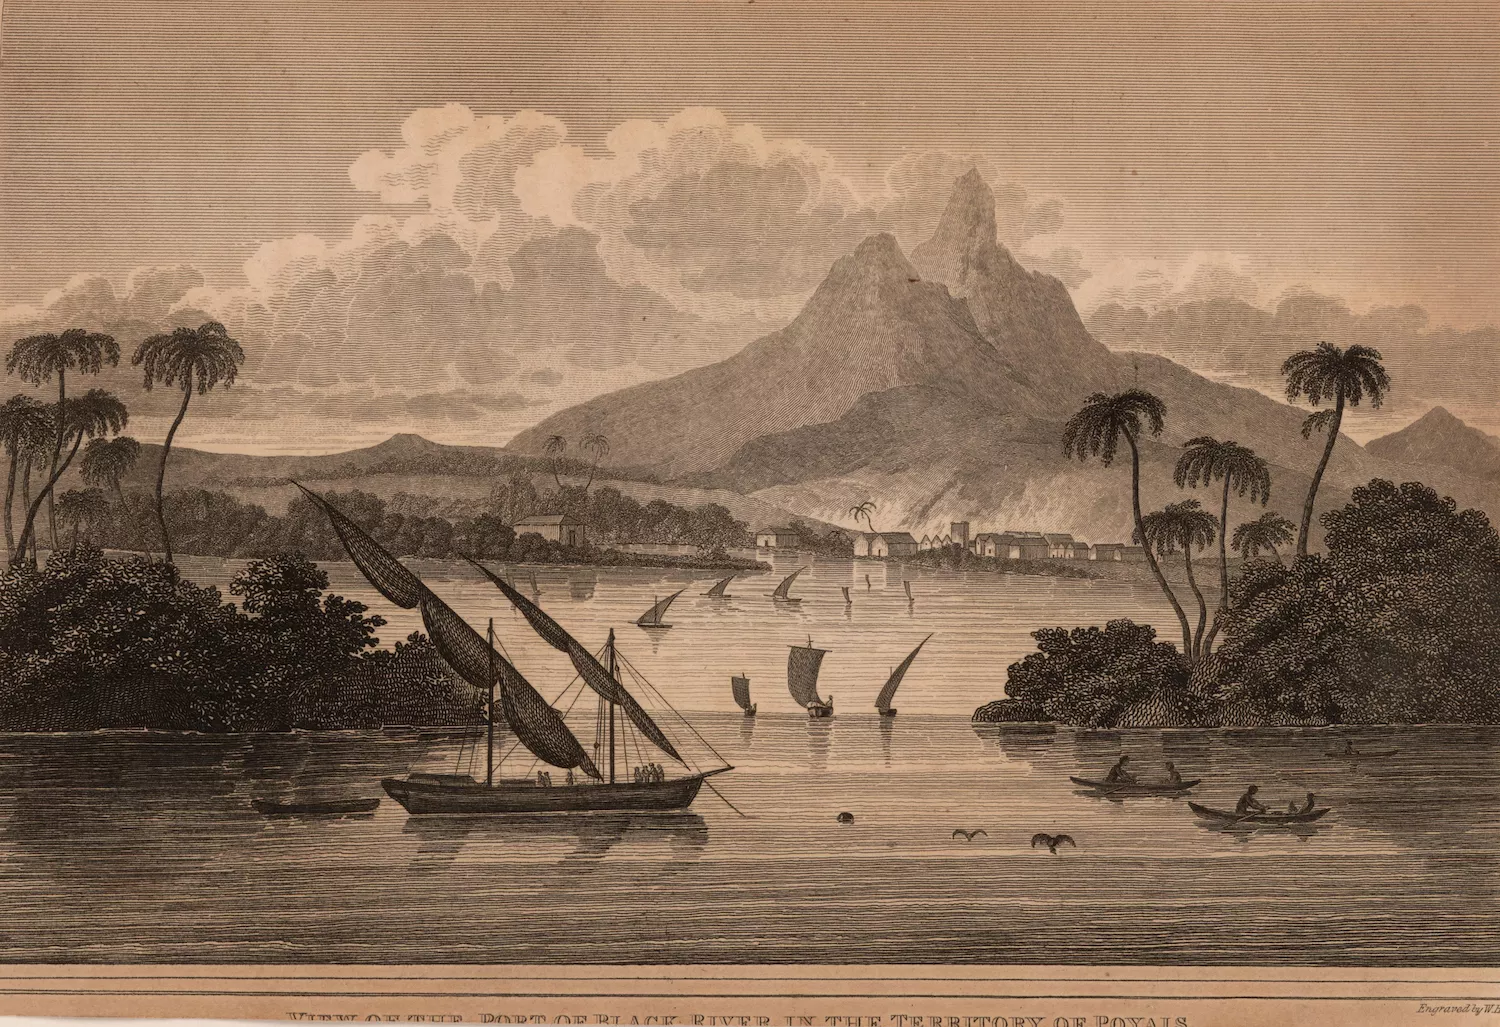 Gravat del llibre fet per MacGregor el 1822 on mostra una vista tan idíl·lica com inventada del port del Riu Negre de Poyais